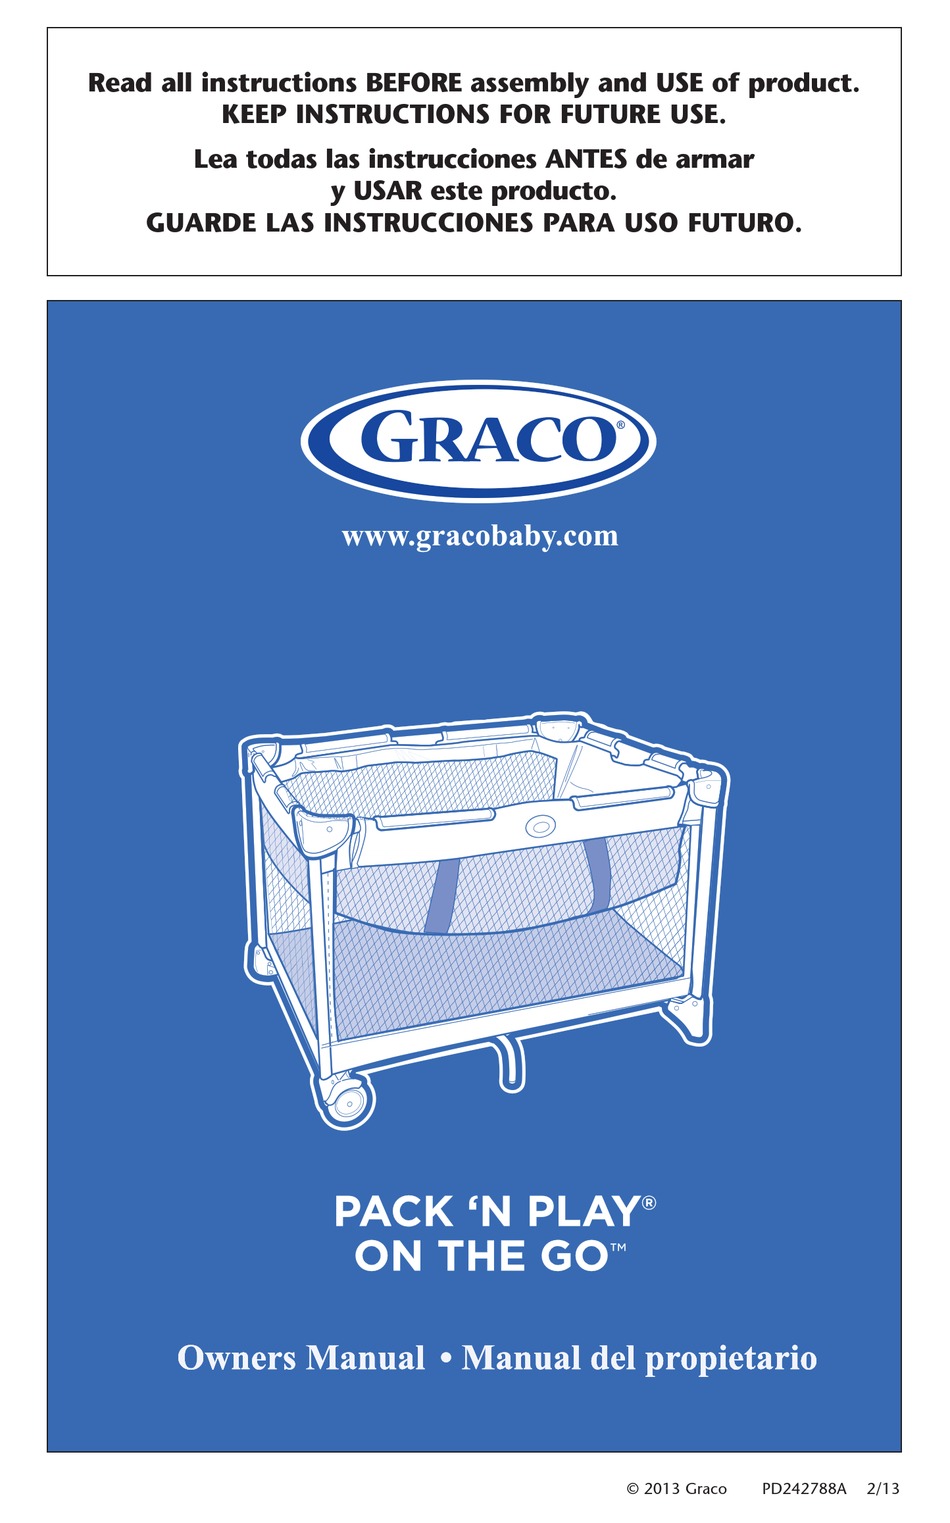 assembling graco pack n play